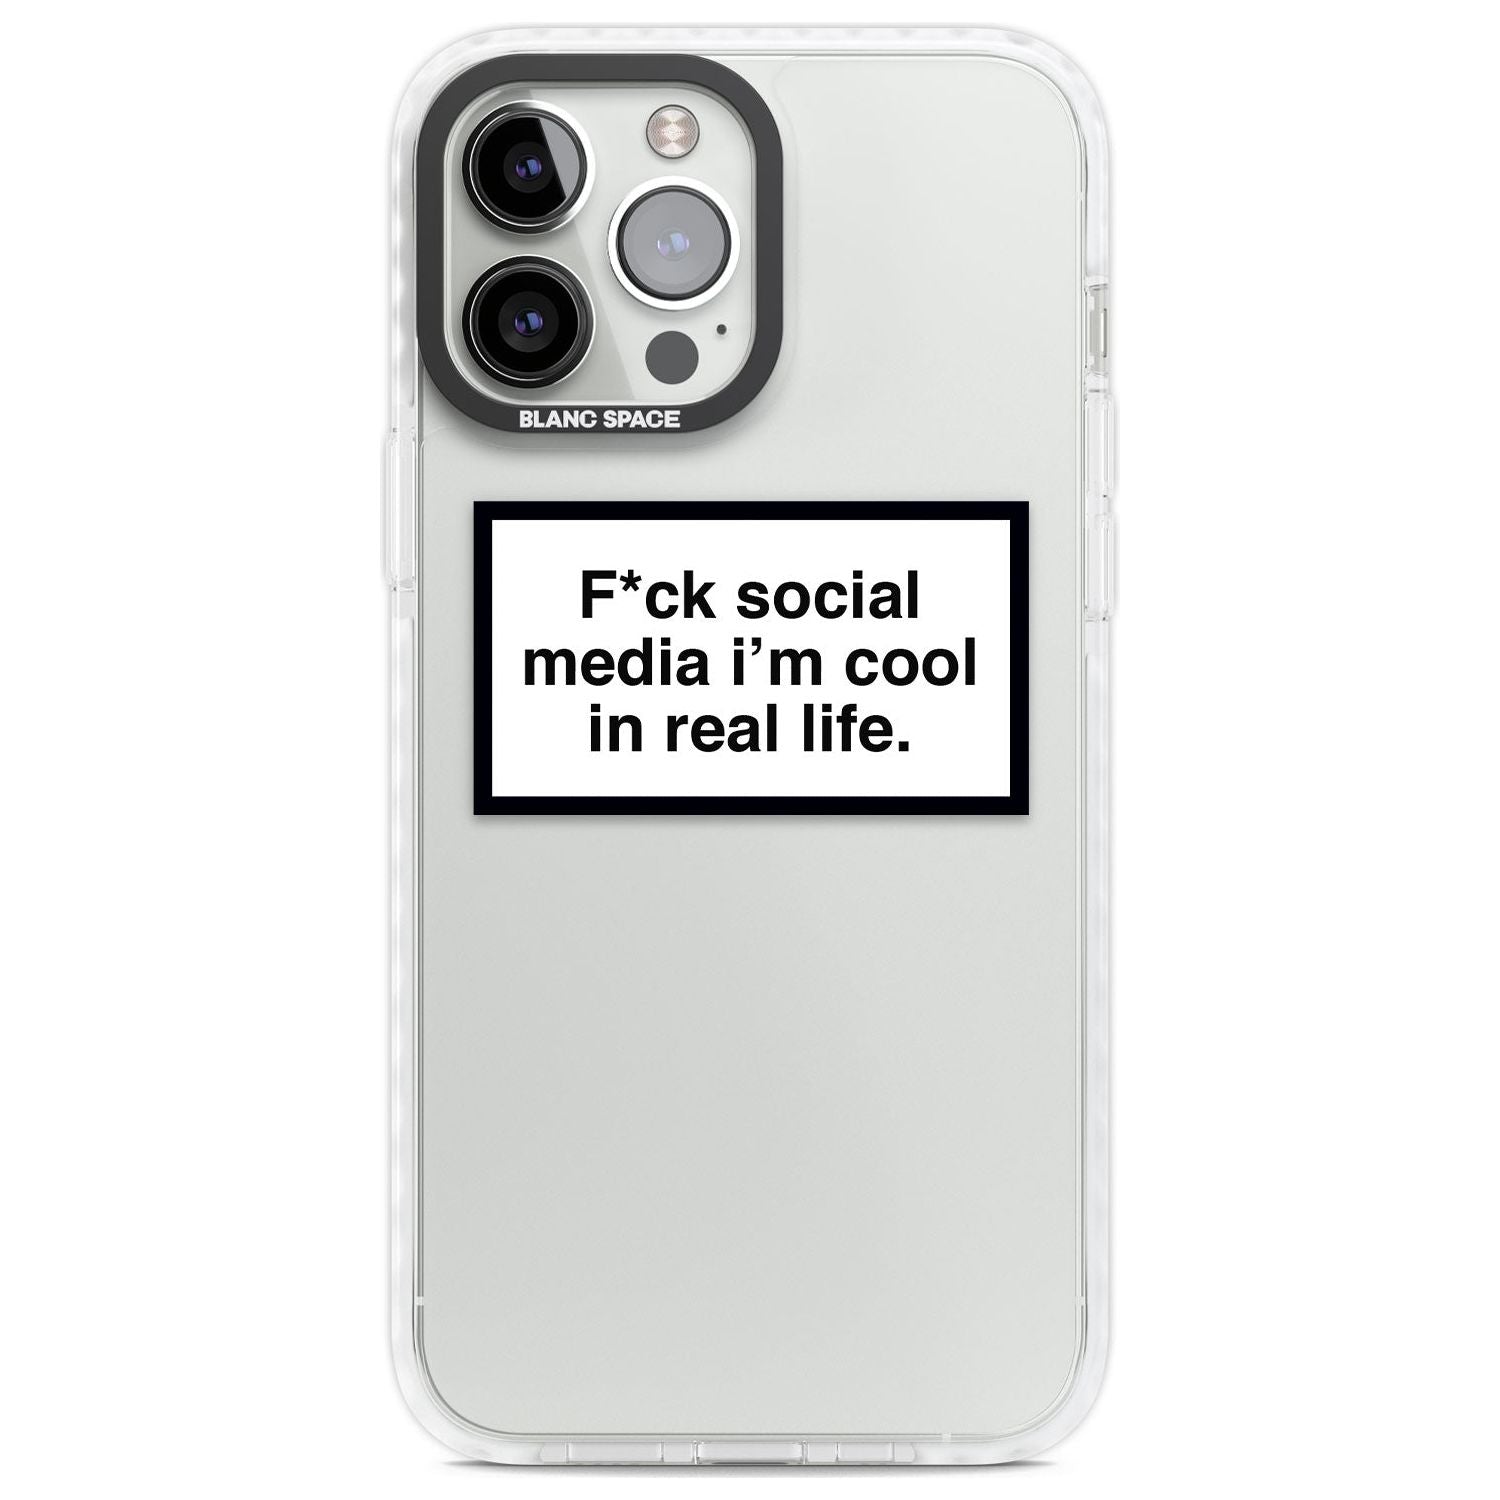 F*ck Social Media Phone Case iPhone 13 Pro Max / Impact Case,iPhone 14 Pro Max / Impact Case Blanc Space